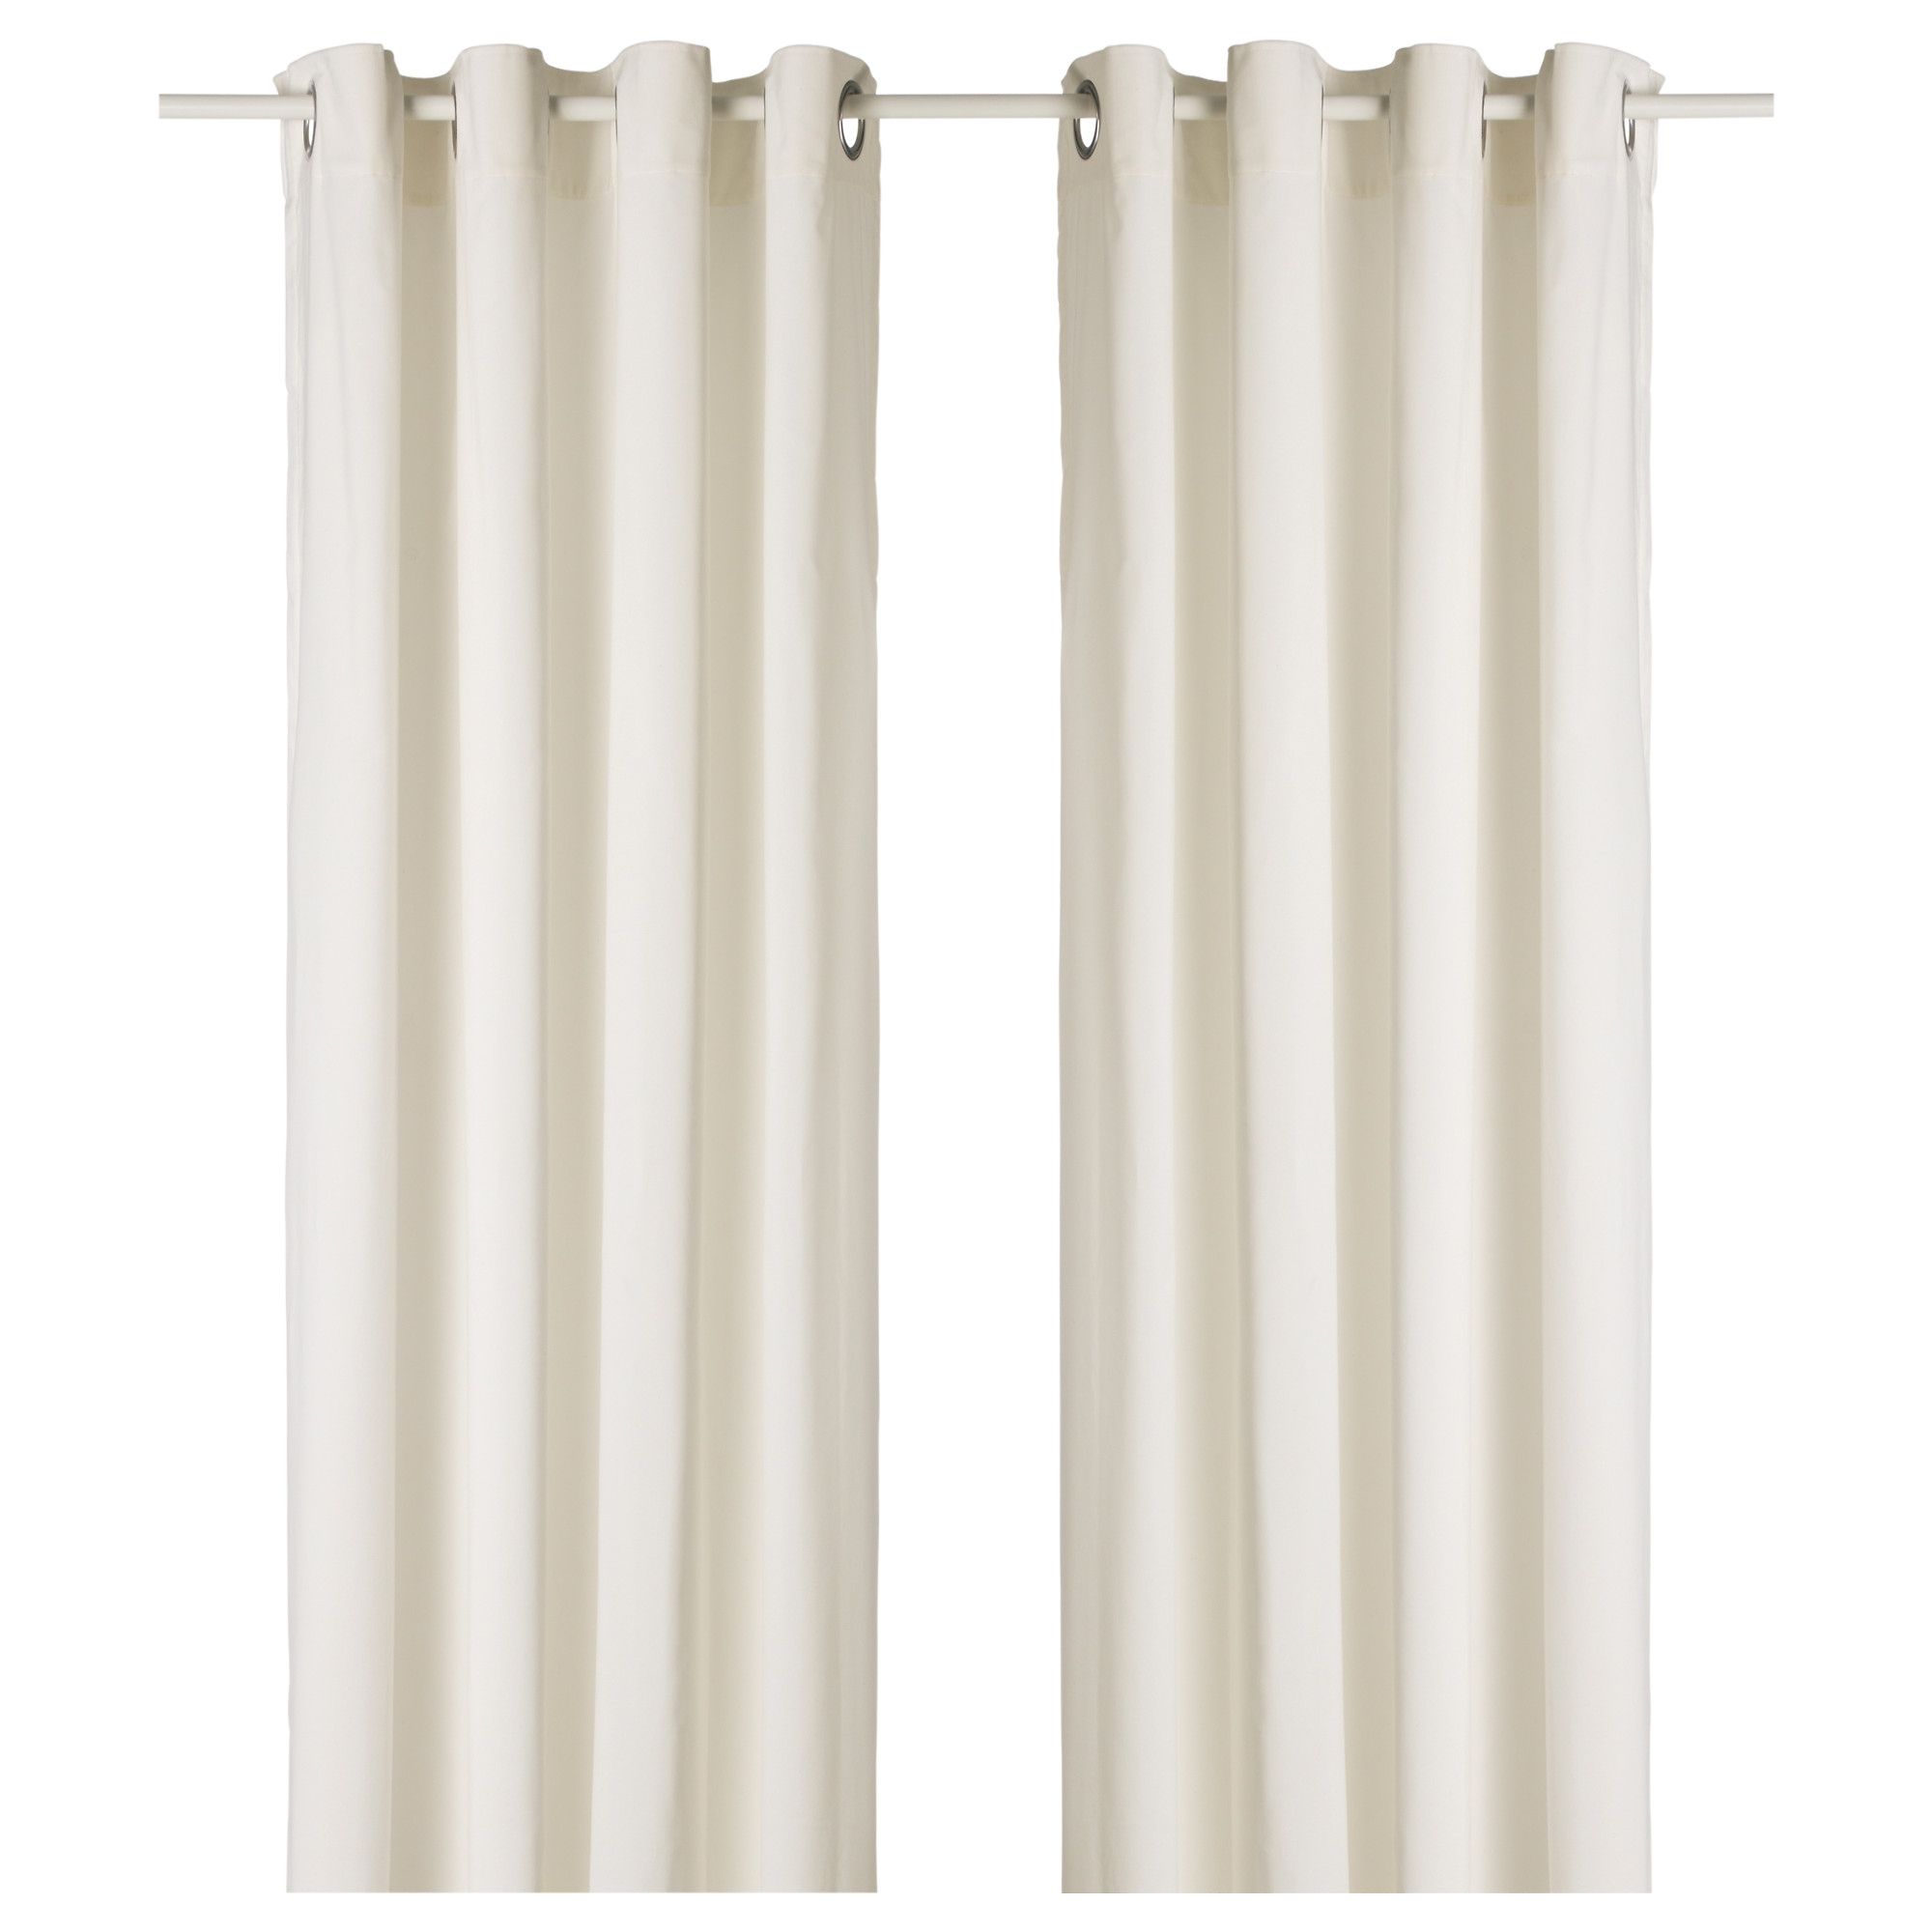 15+ White Thick Curtains | Curtain Ideas